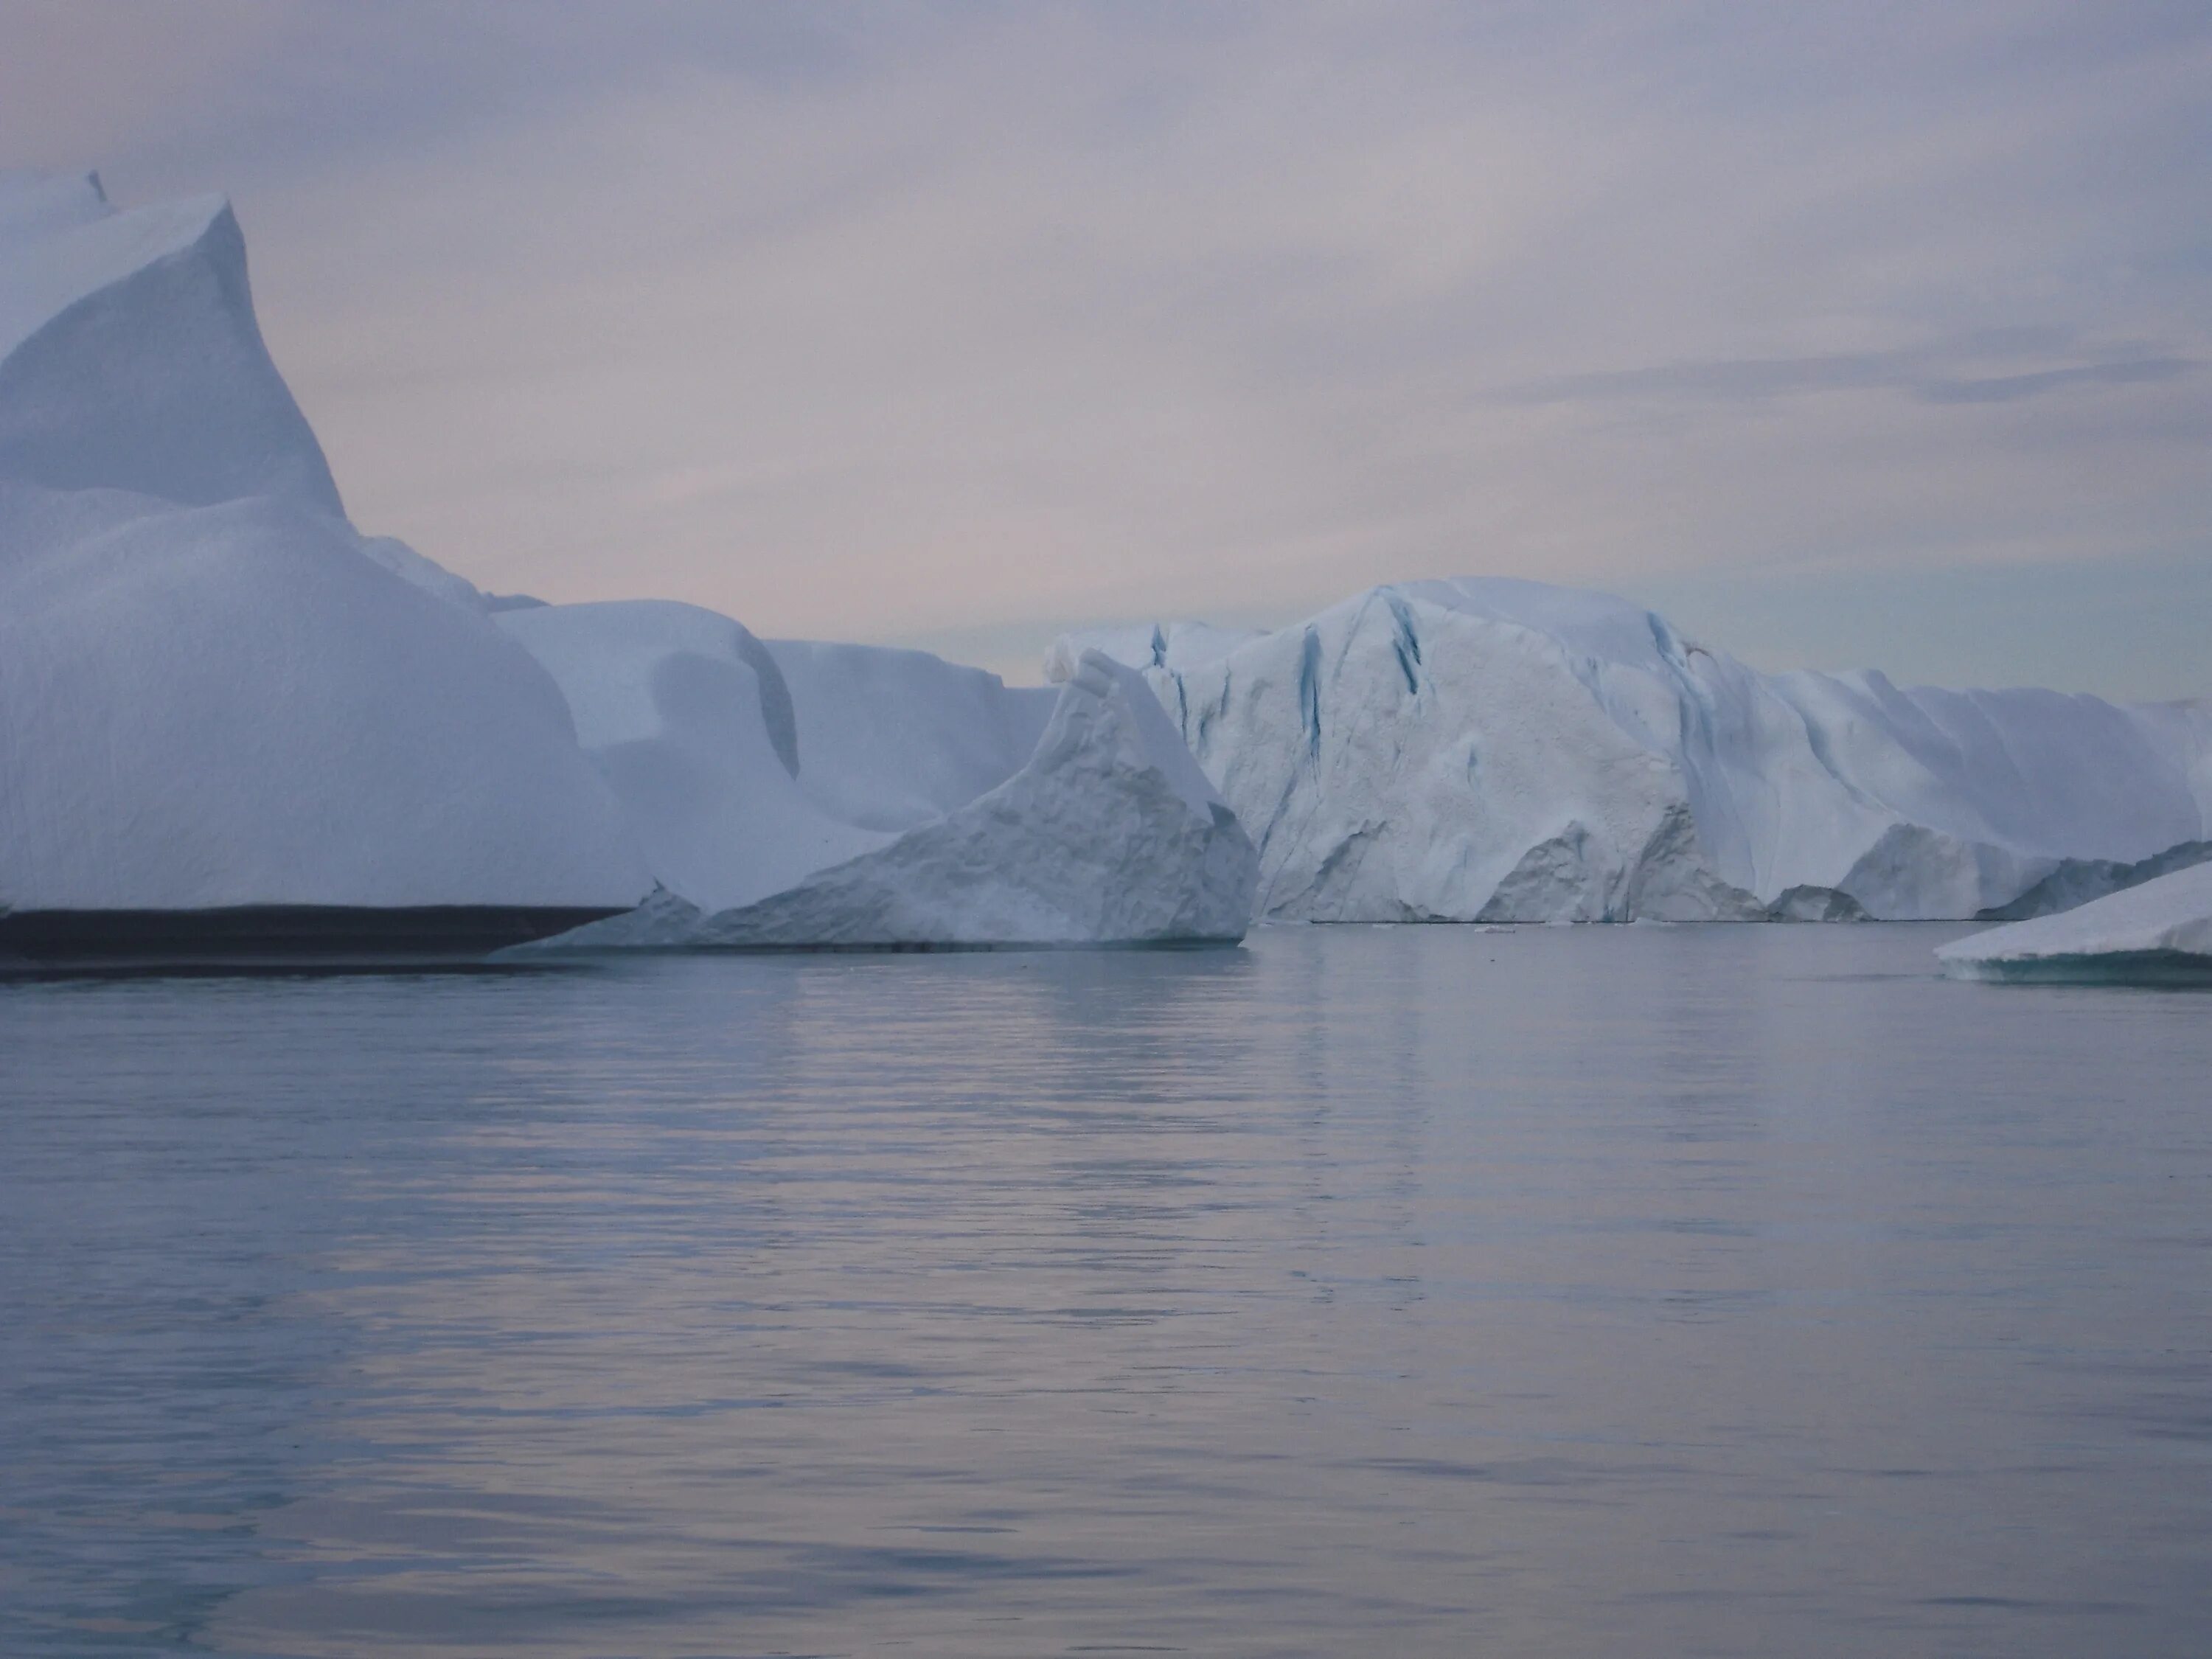 Большой остров покрытый льдами. Ледники Гренландии. Гренландия и Северный полюс. Станция Норт-айс на севере Гренландии. Баренцево море айсберги.